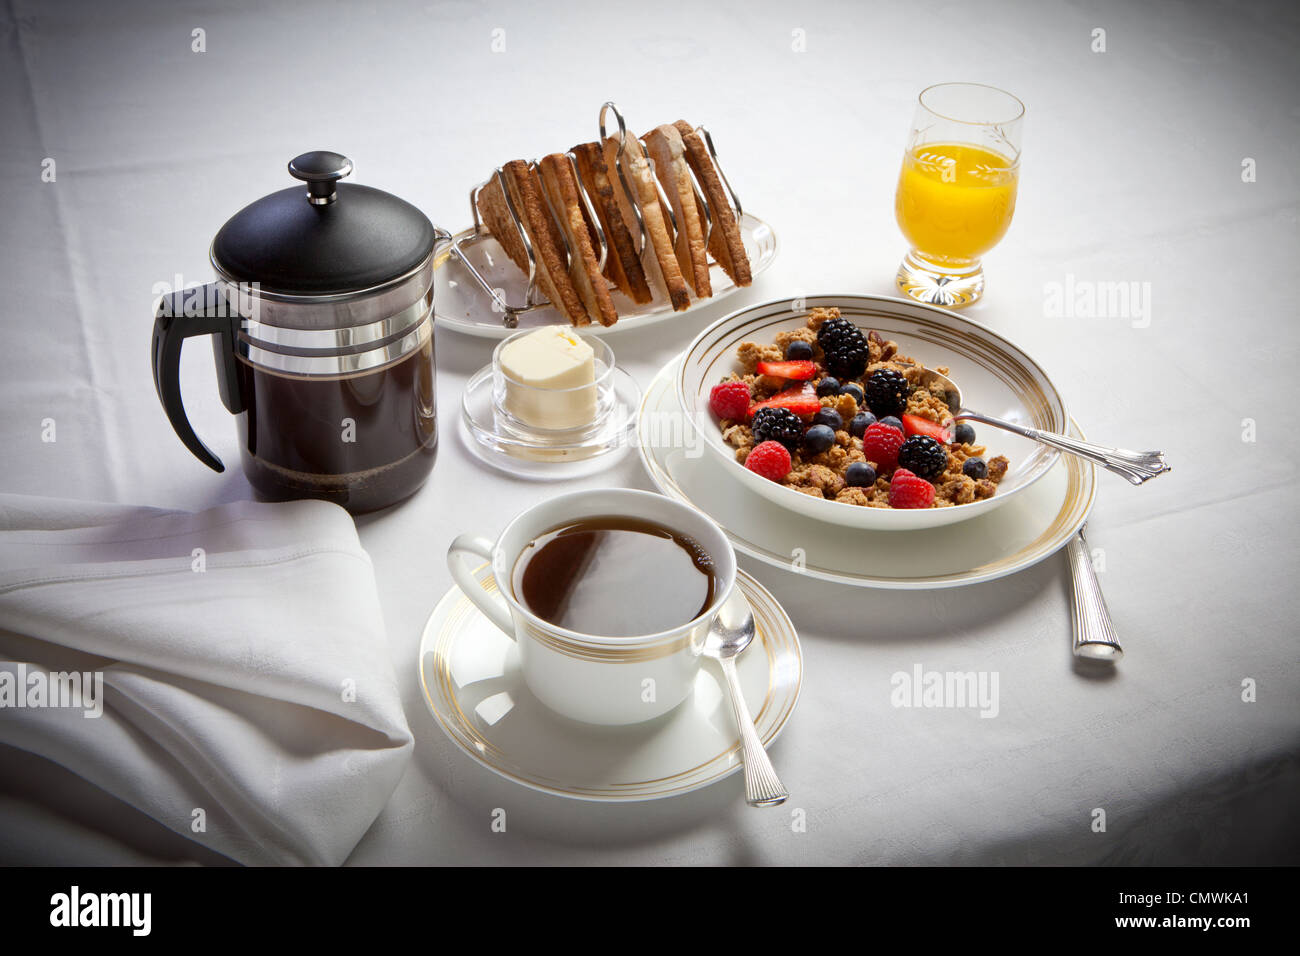 Petit-déjeuner continental avec des céréales et du pain grillé jus de café, disposés sur une nappe de lin blanc Banque D'Images